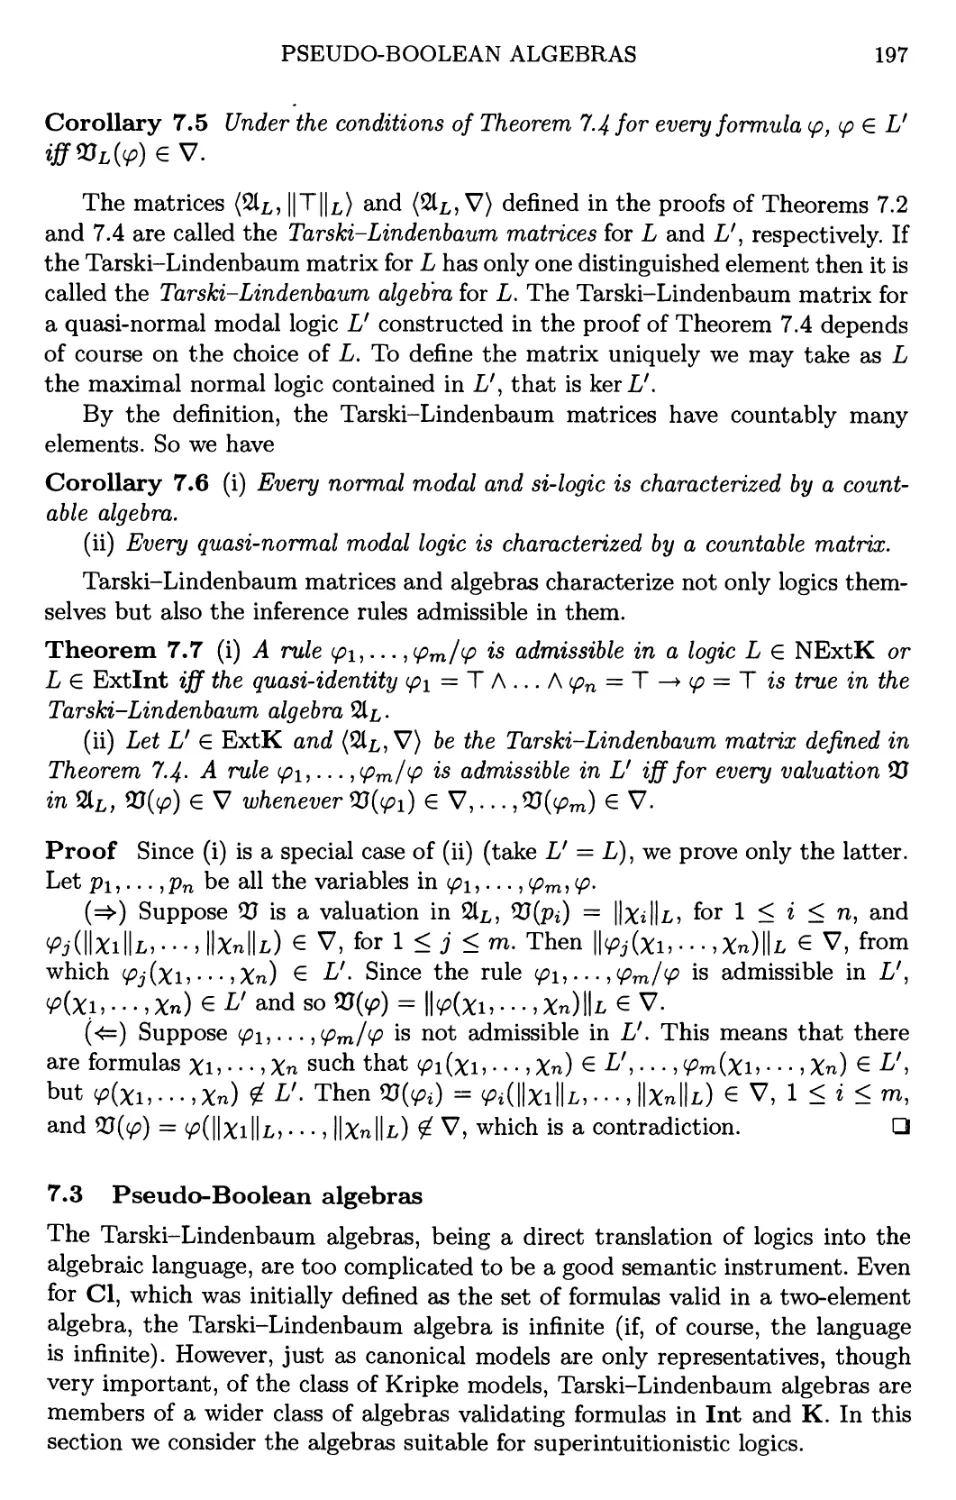 7.3 Pseudo-Boolean algebras